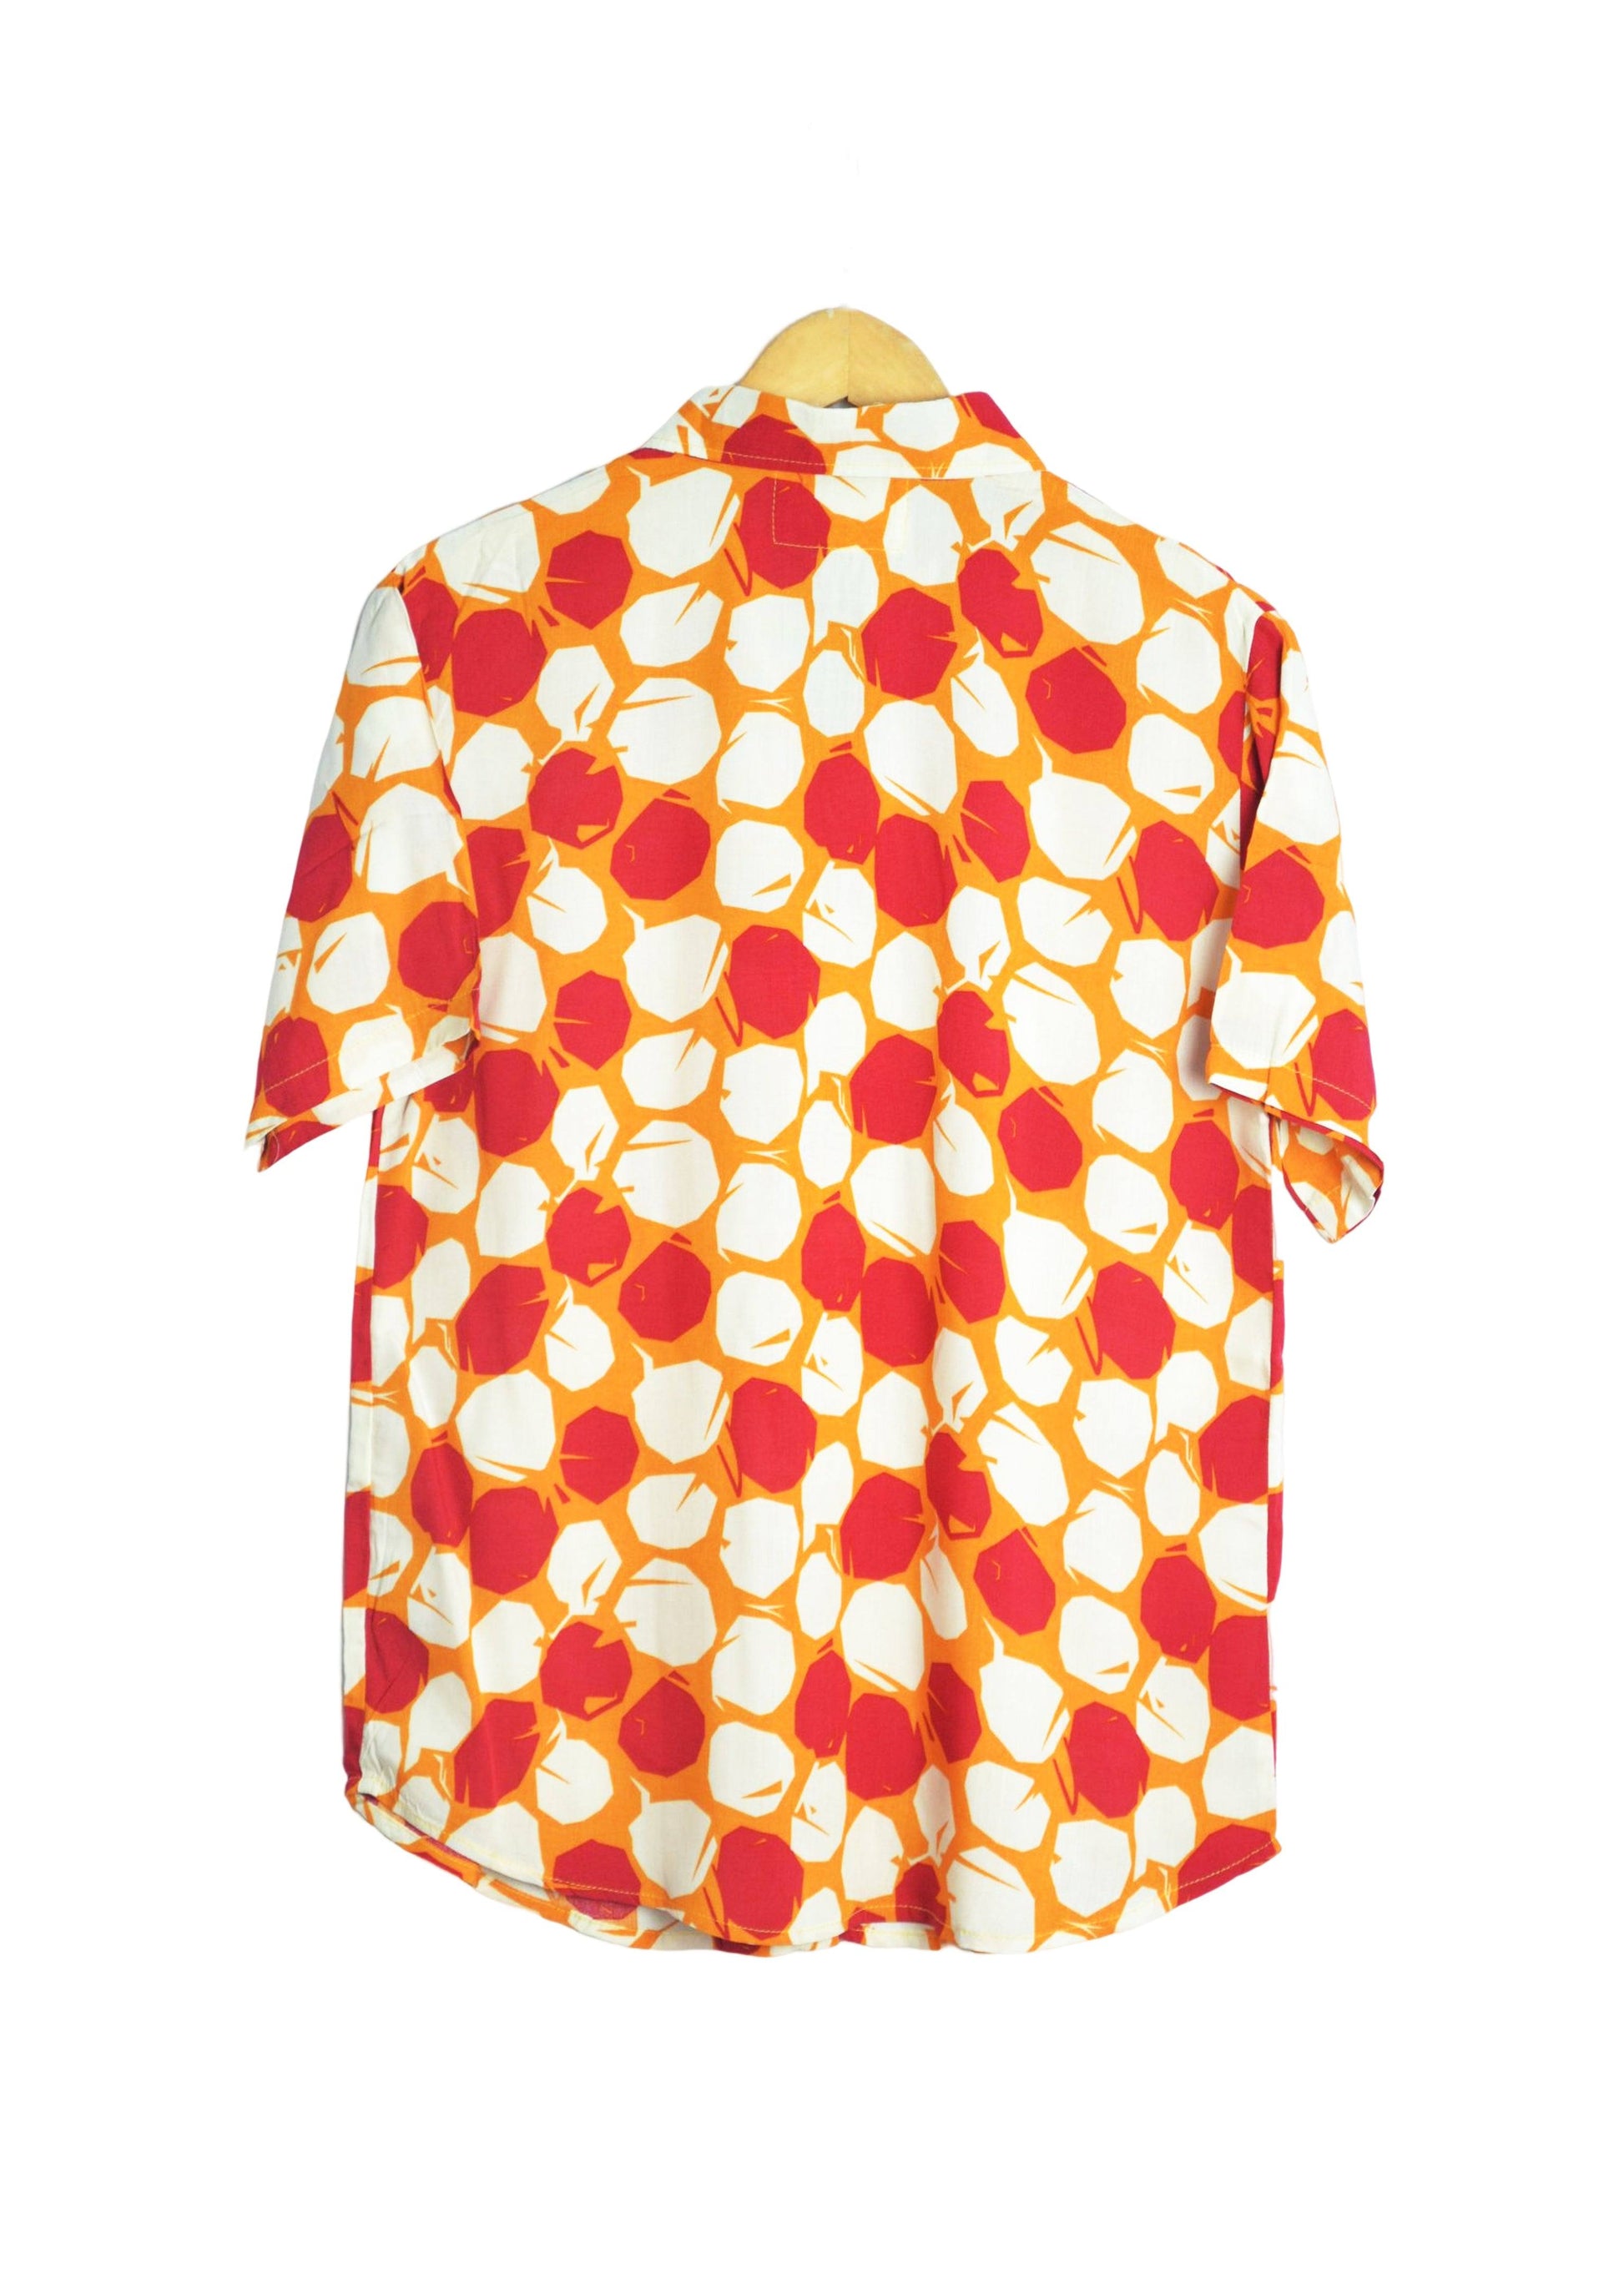 Vue dos chemise orange à motifs ronds rouge et beige - GL BOUTIK